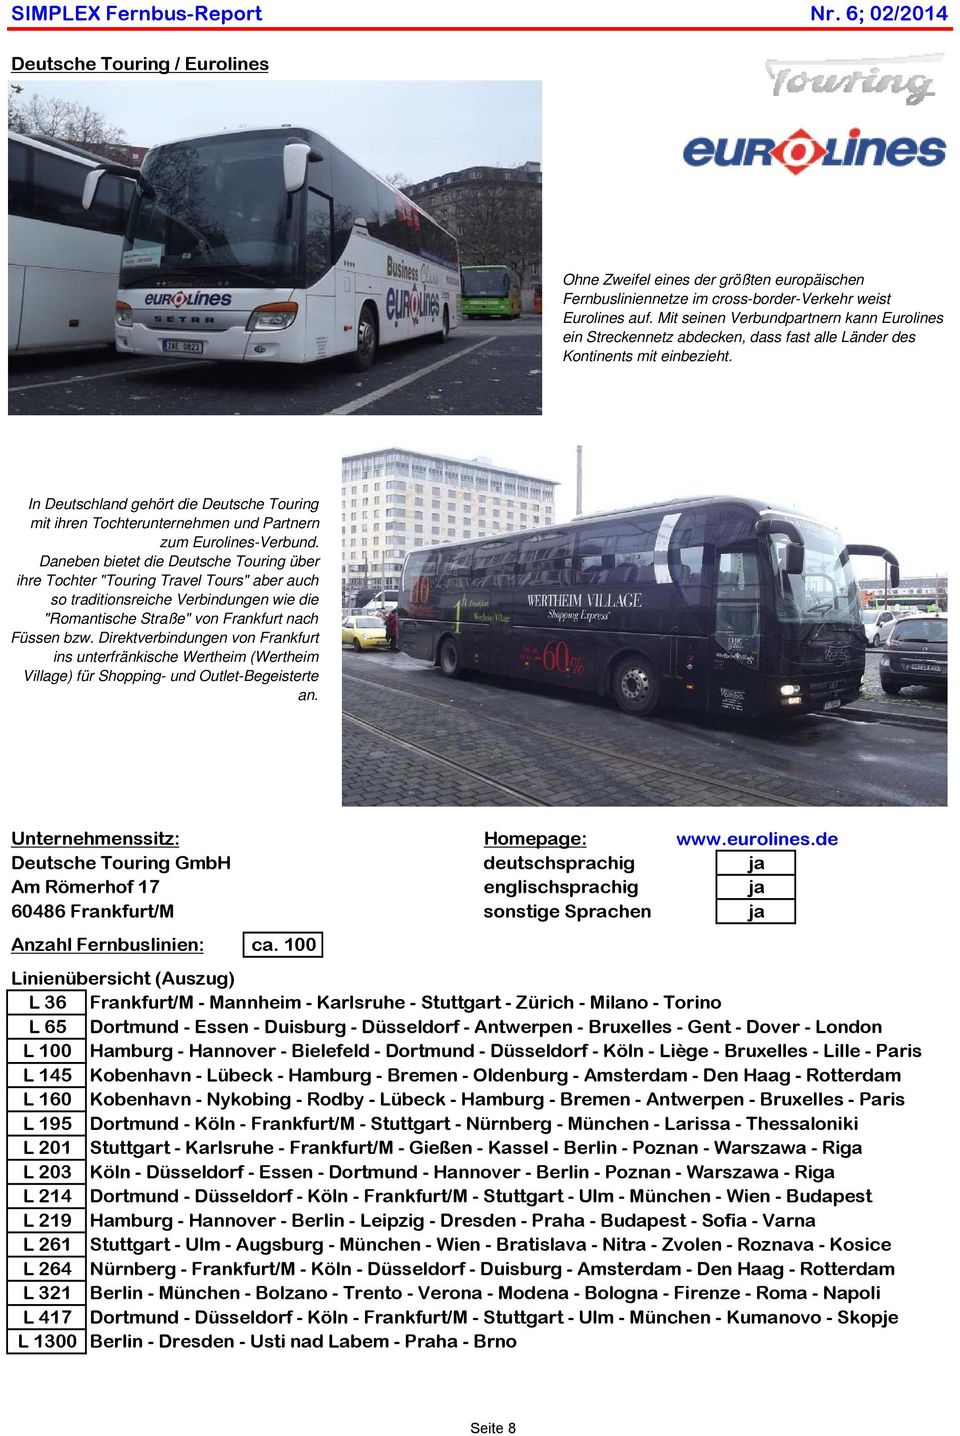 In Deutschland gehört die Deutsche Touring mit ihren Tochterunternehmen und Partnern zum Eurolines-Verbund.